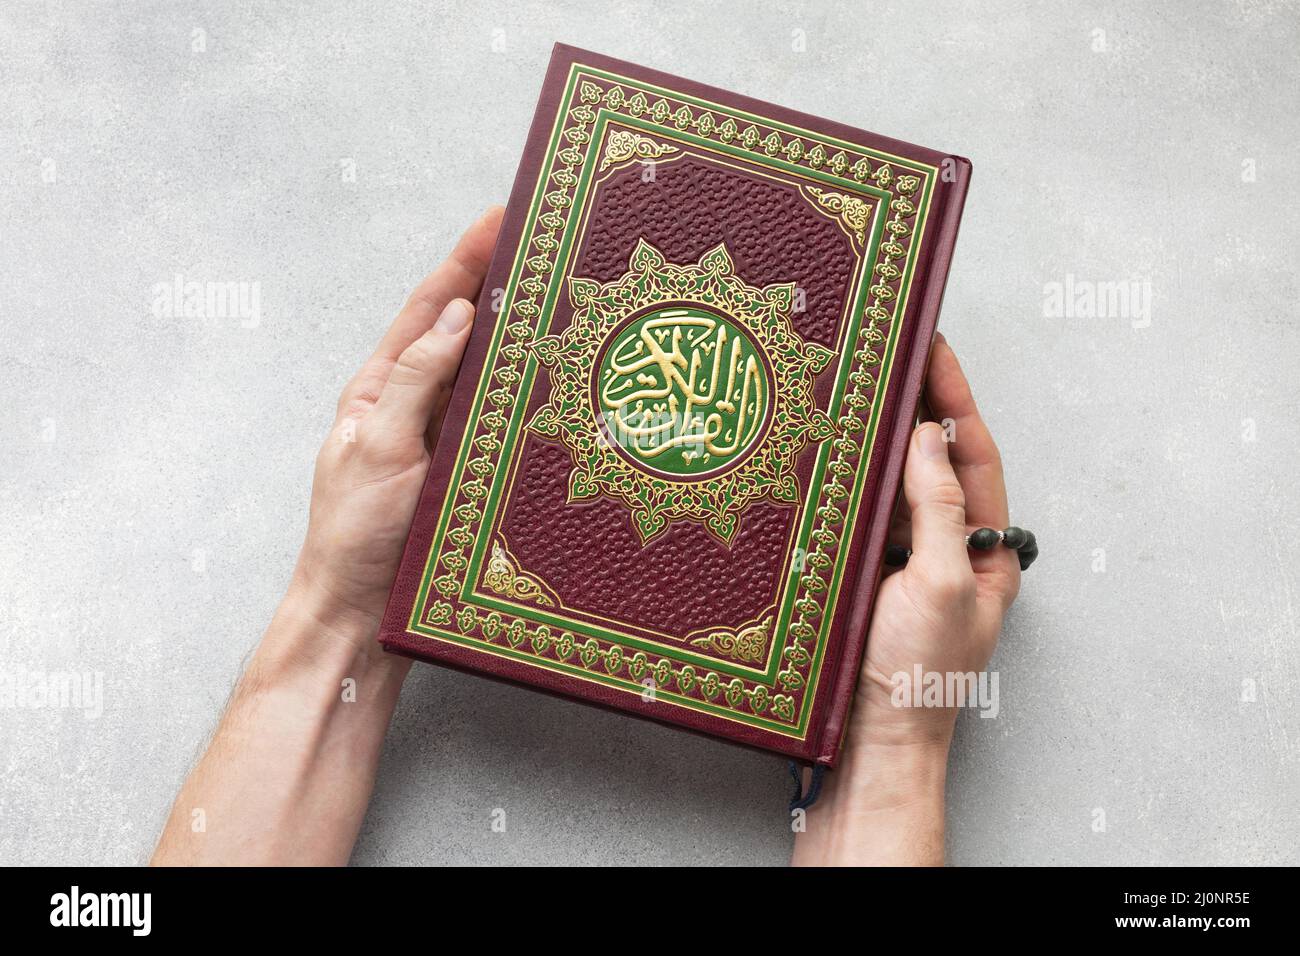 Top View islamique nouvel an avec le livre de coran. Haute qualité et résolution magnifique concept de photo Banque D'Images